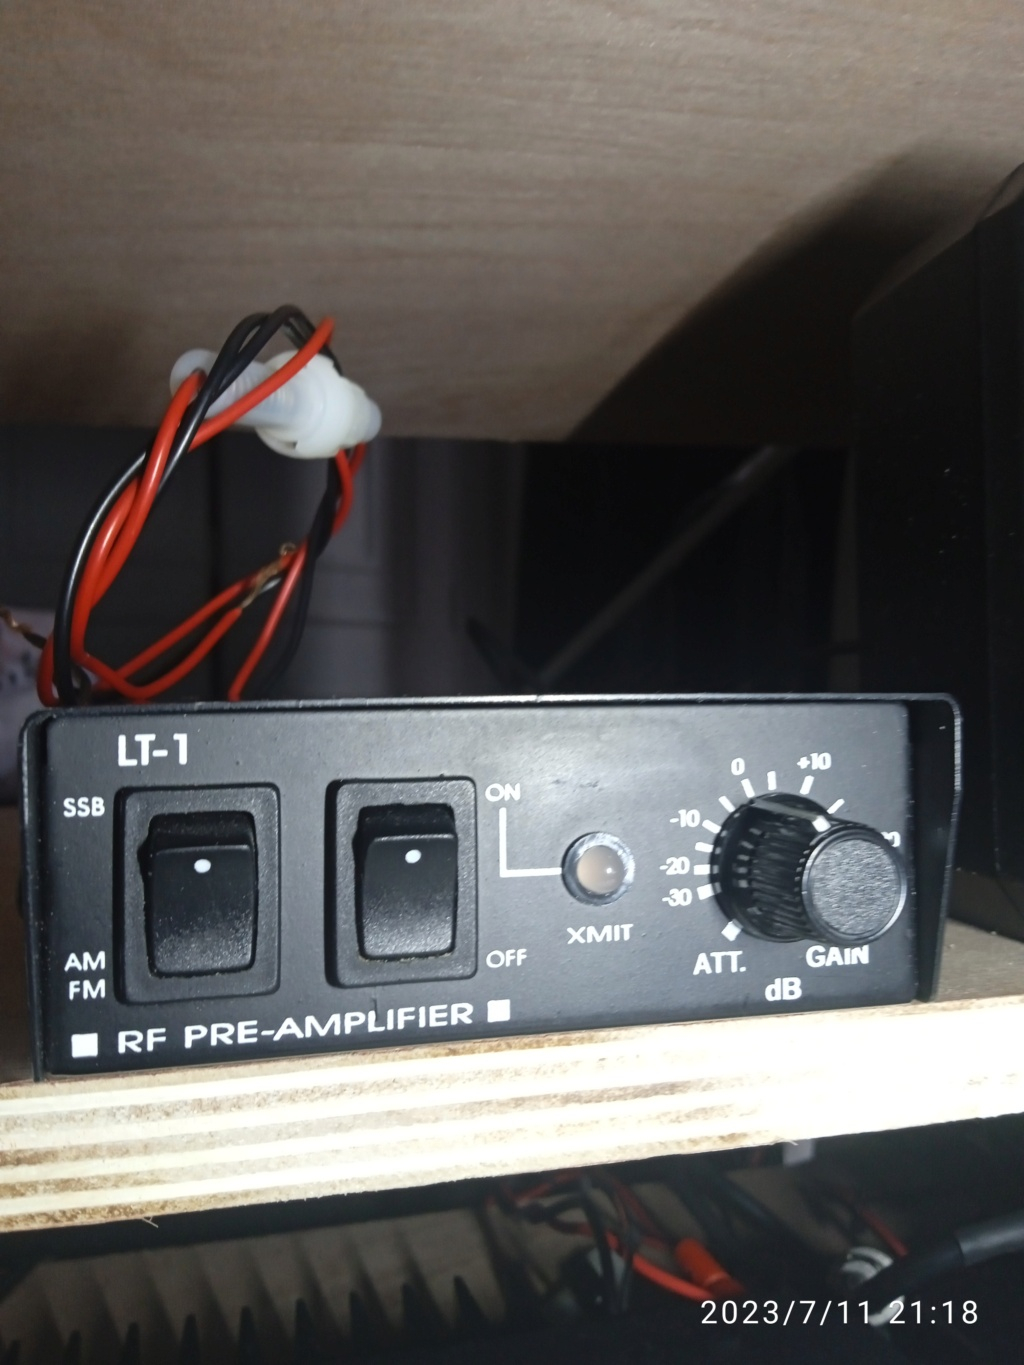 The Bandit LT-1 RF Pre-amplifier A10